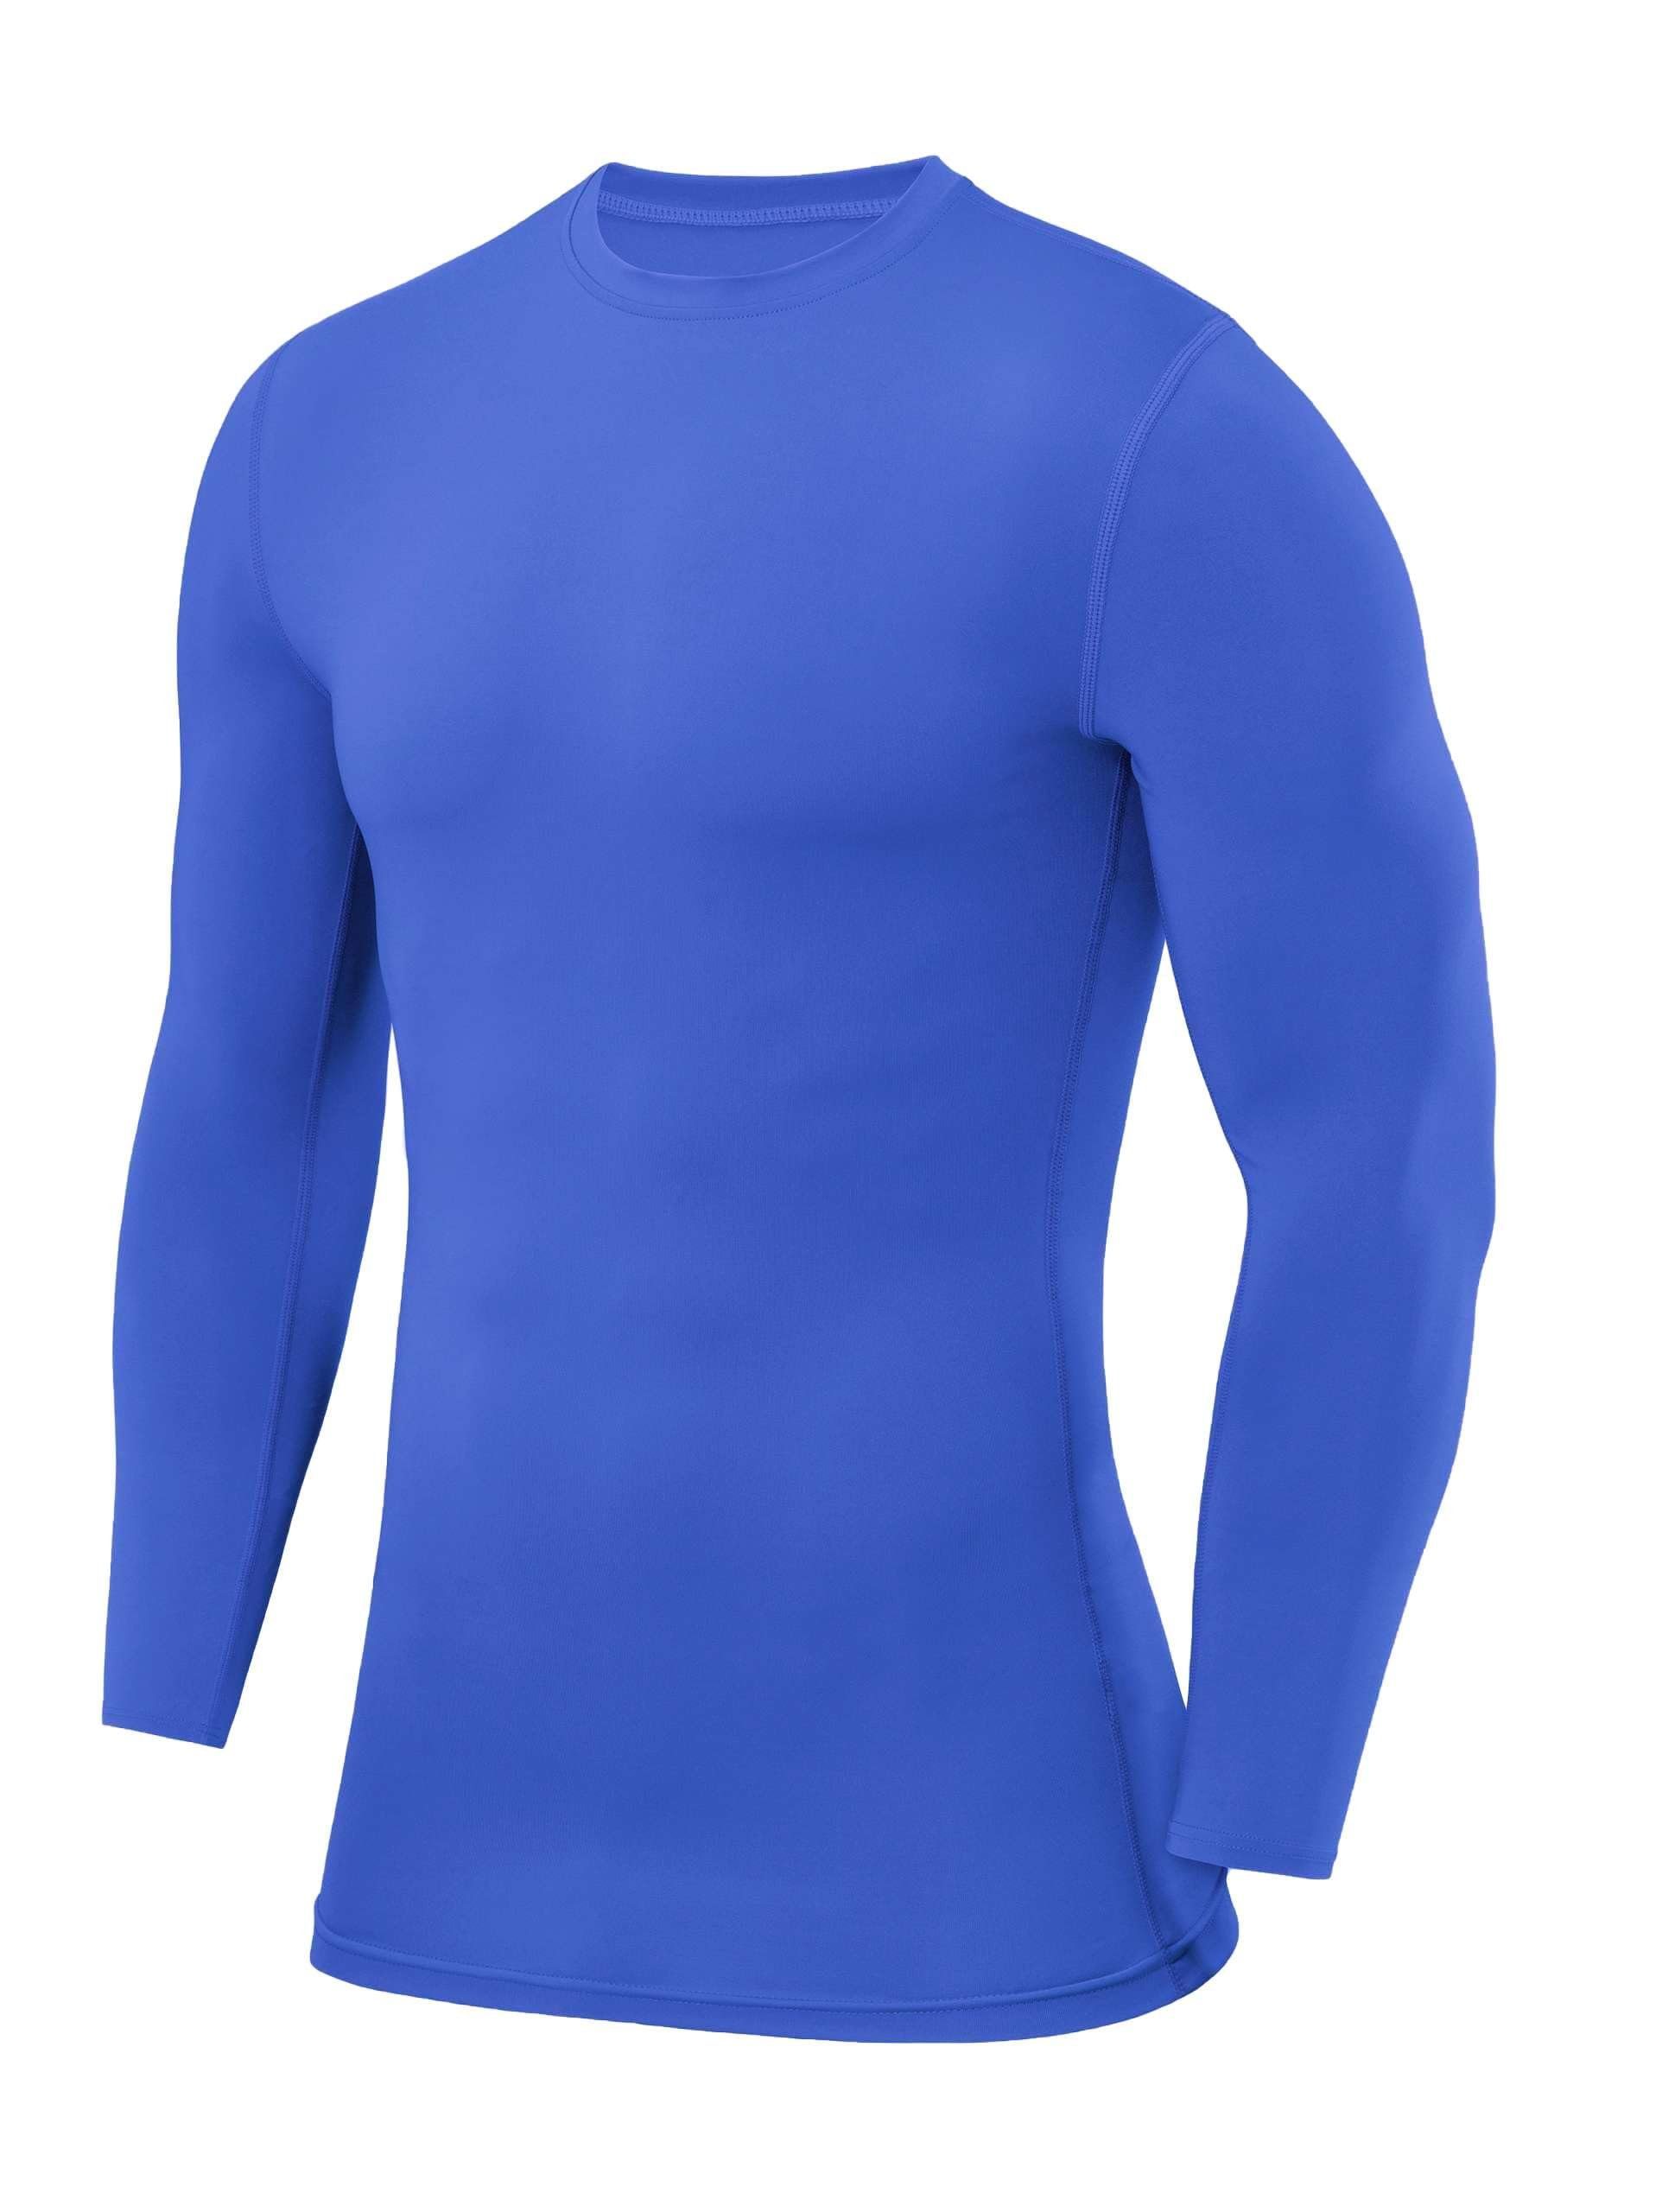 Beliebte neue Artikel auf Lager POWERLAYER Langarmshirt PowerLayer Kompressions XS Herren Blau Shirt Rundhalsausschnitt